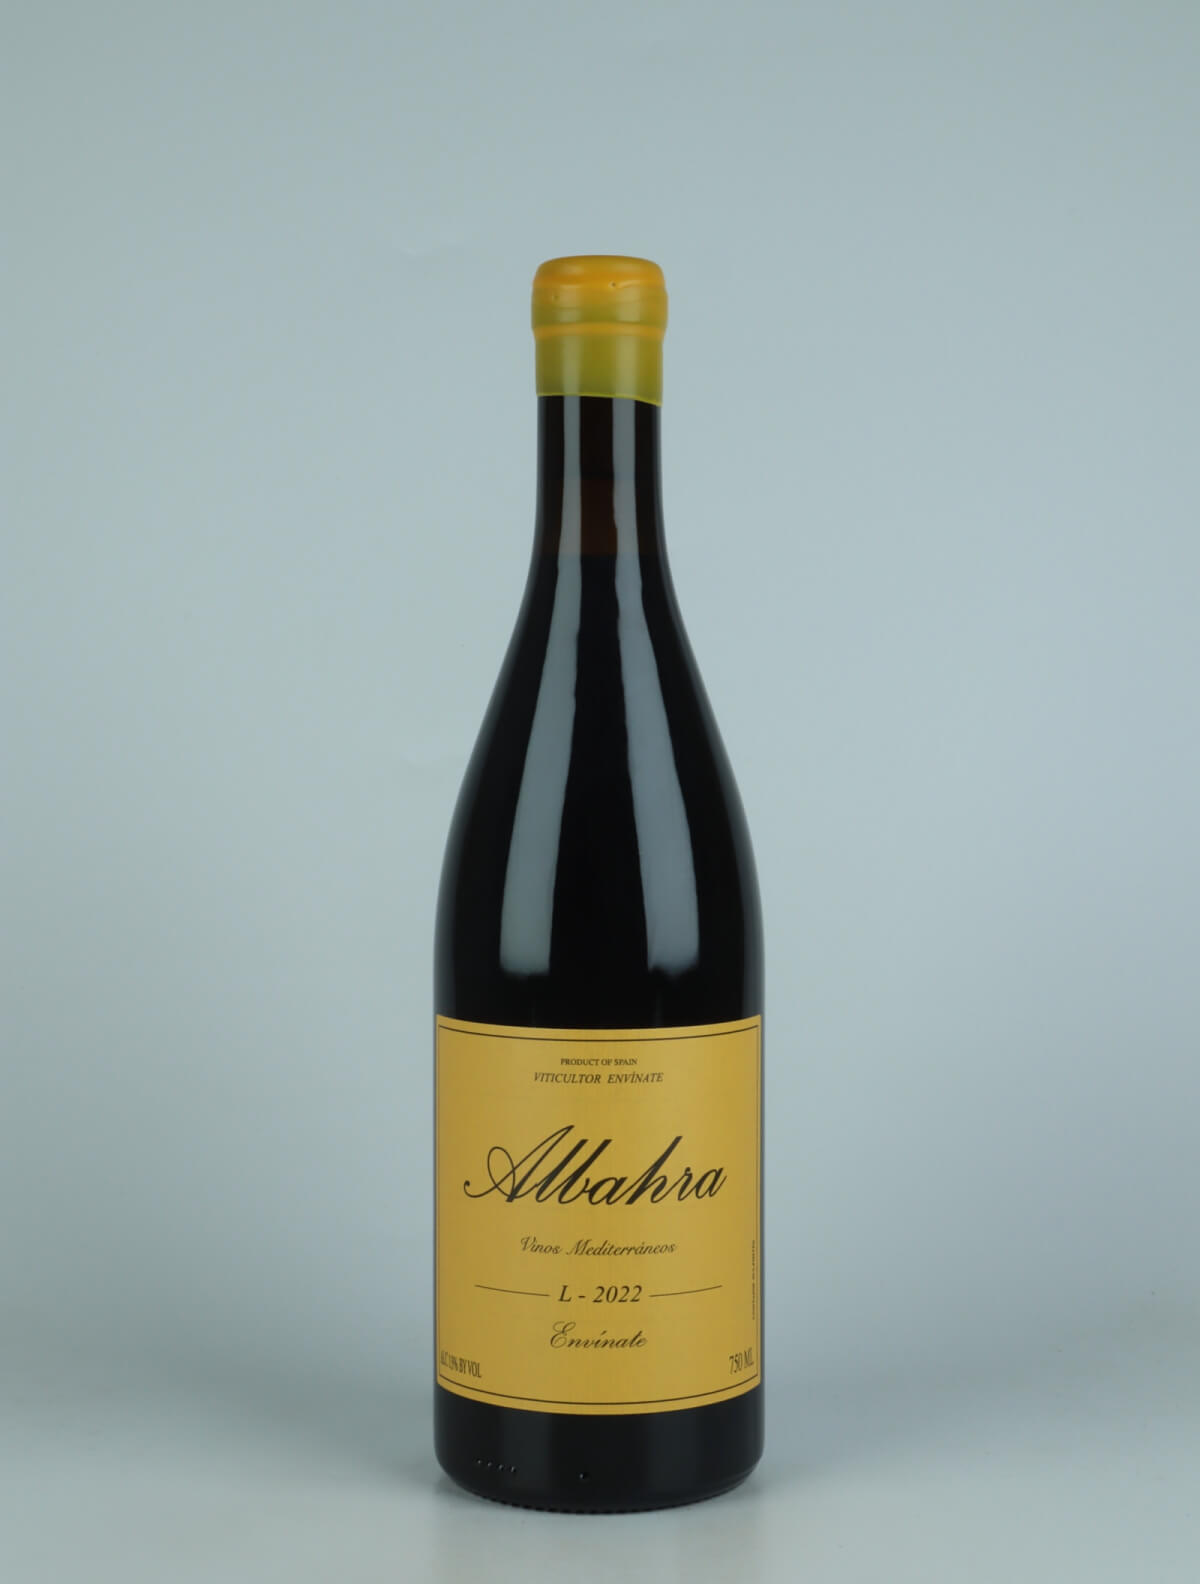 A bottle 2022 Albahra - Almansa Red wine from Envínate, Almansa in Spain